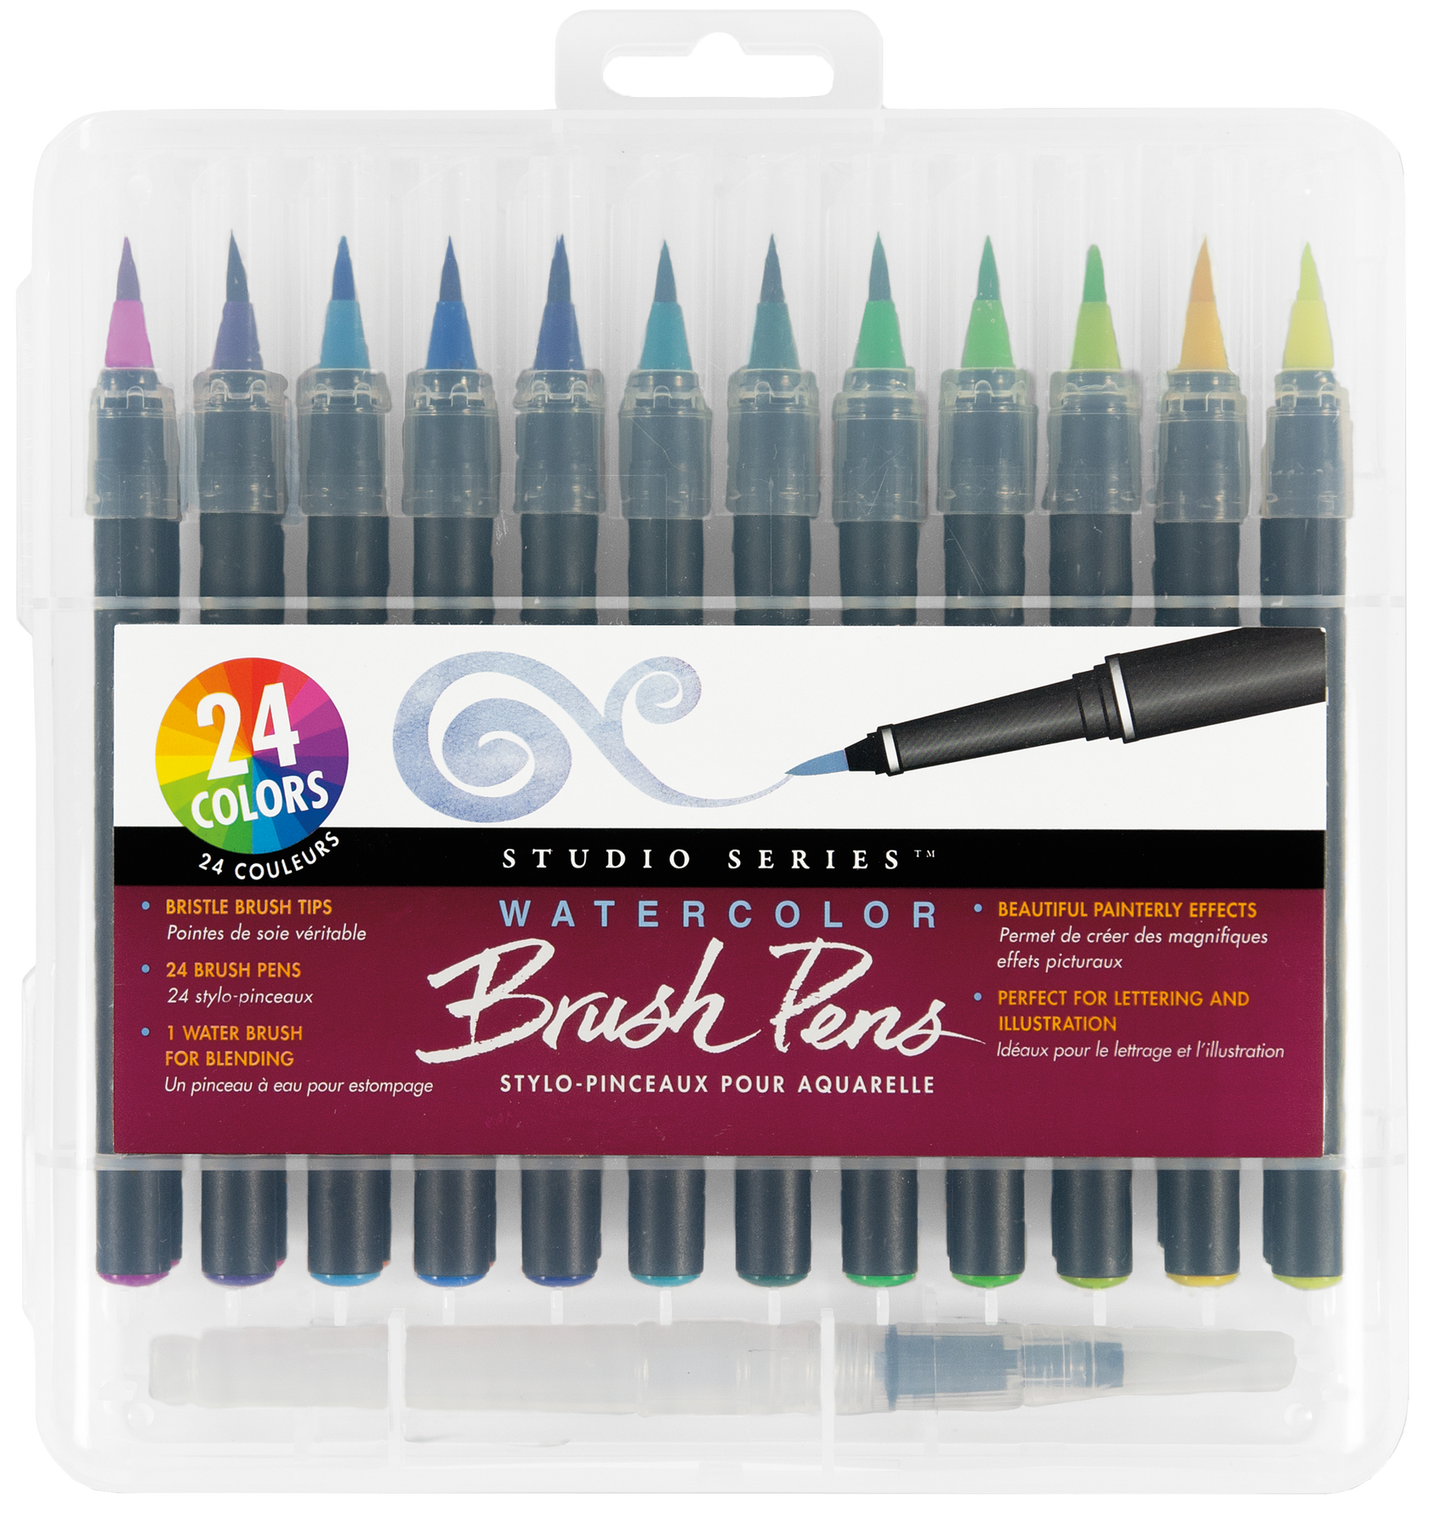 Peter Pauper Press - Studio Series Watercolor Brush Pen Set